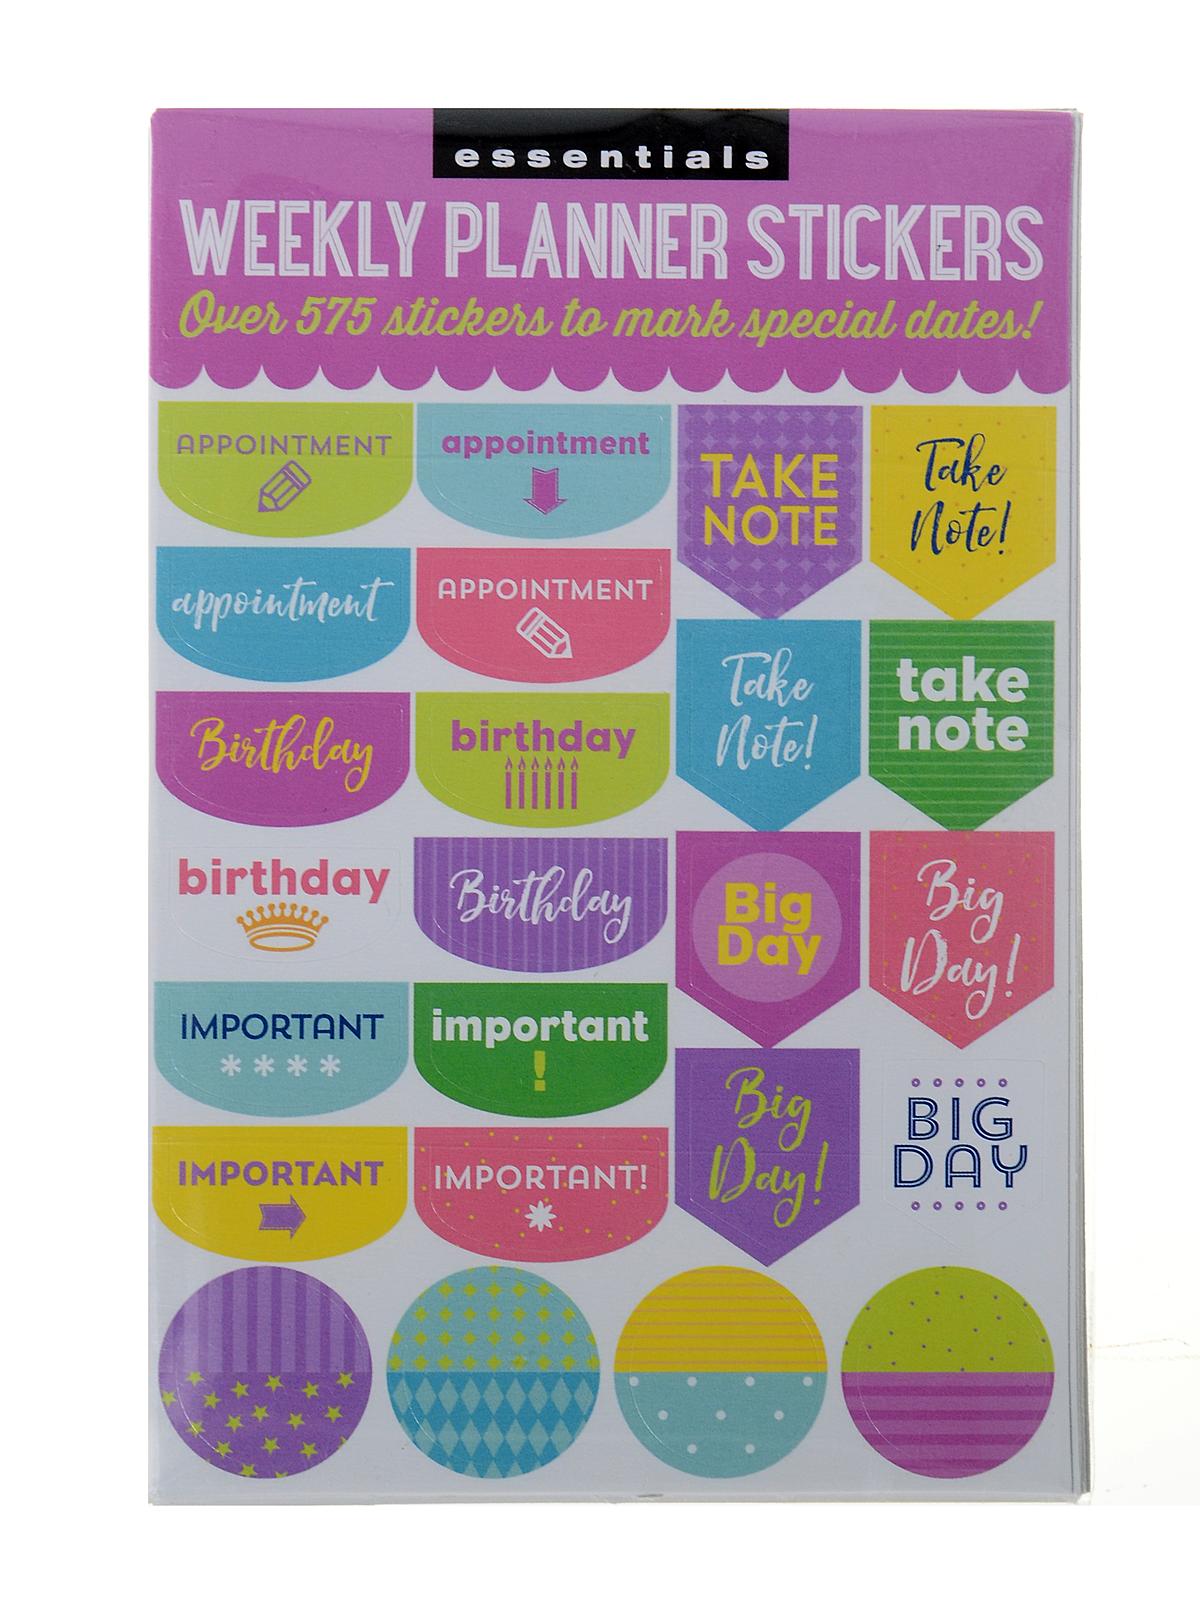 Essentials Planner Sticker Sets Weekly